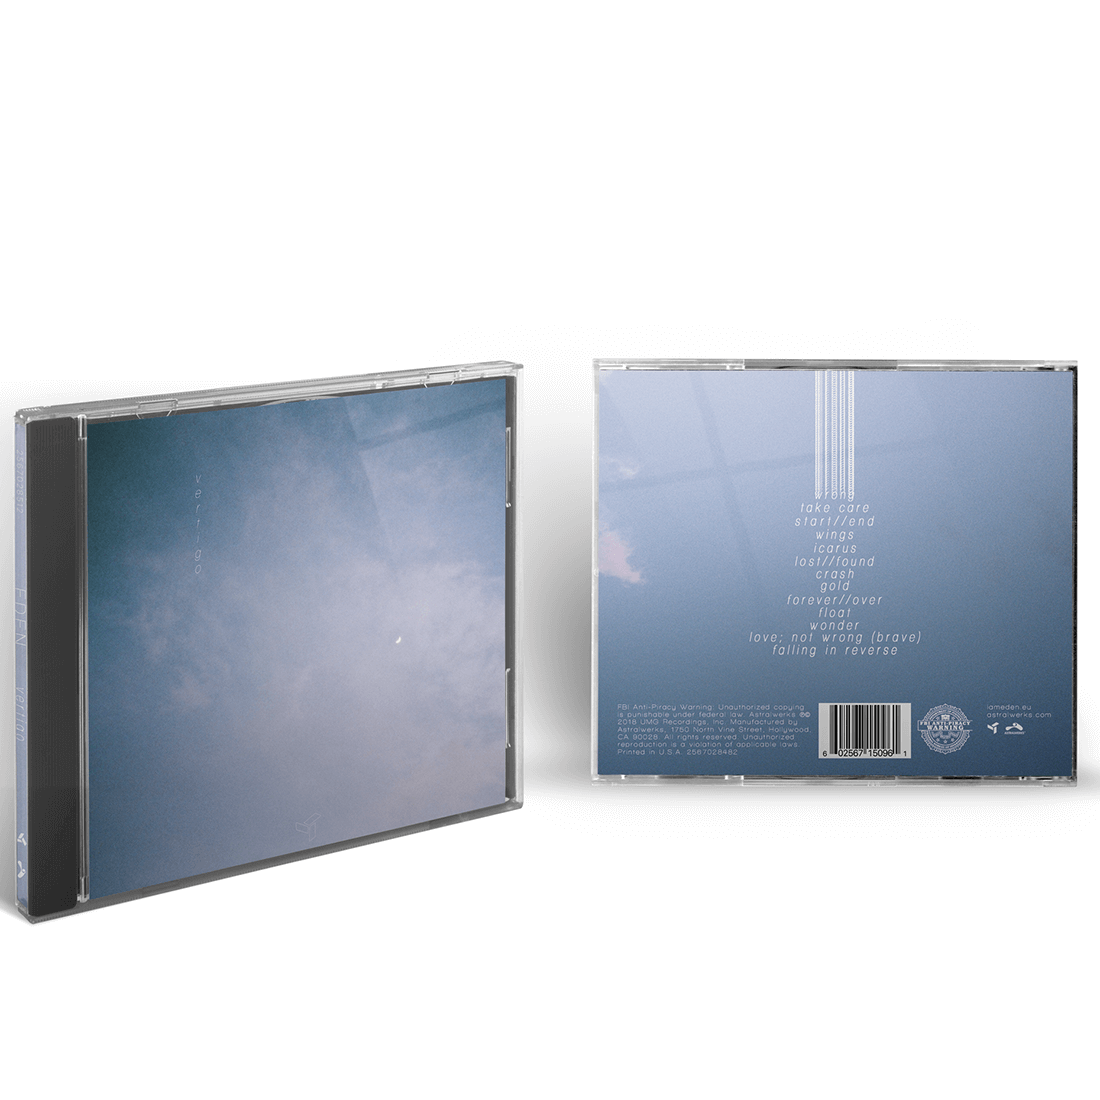 EDEN - Vertigo CD